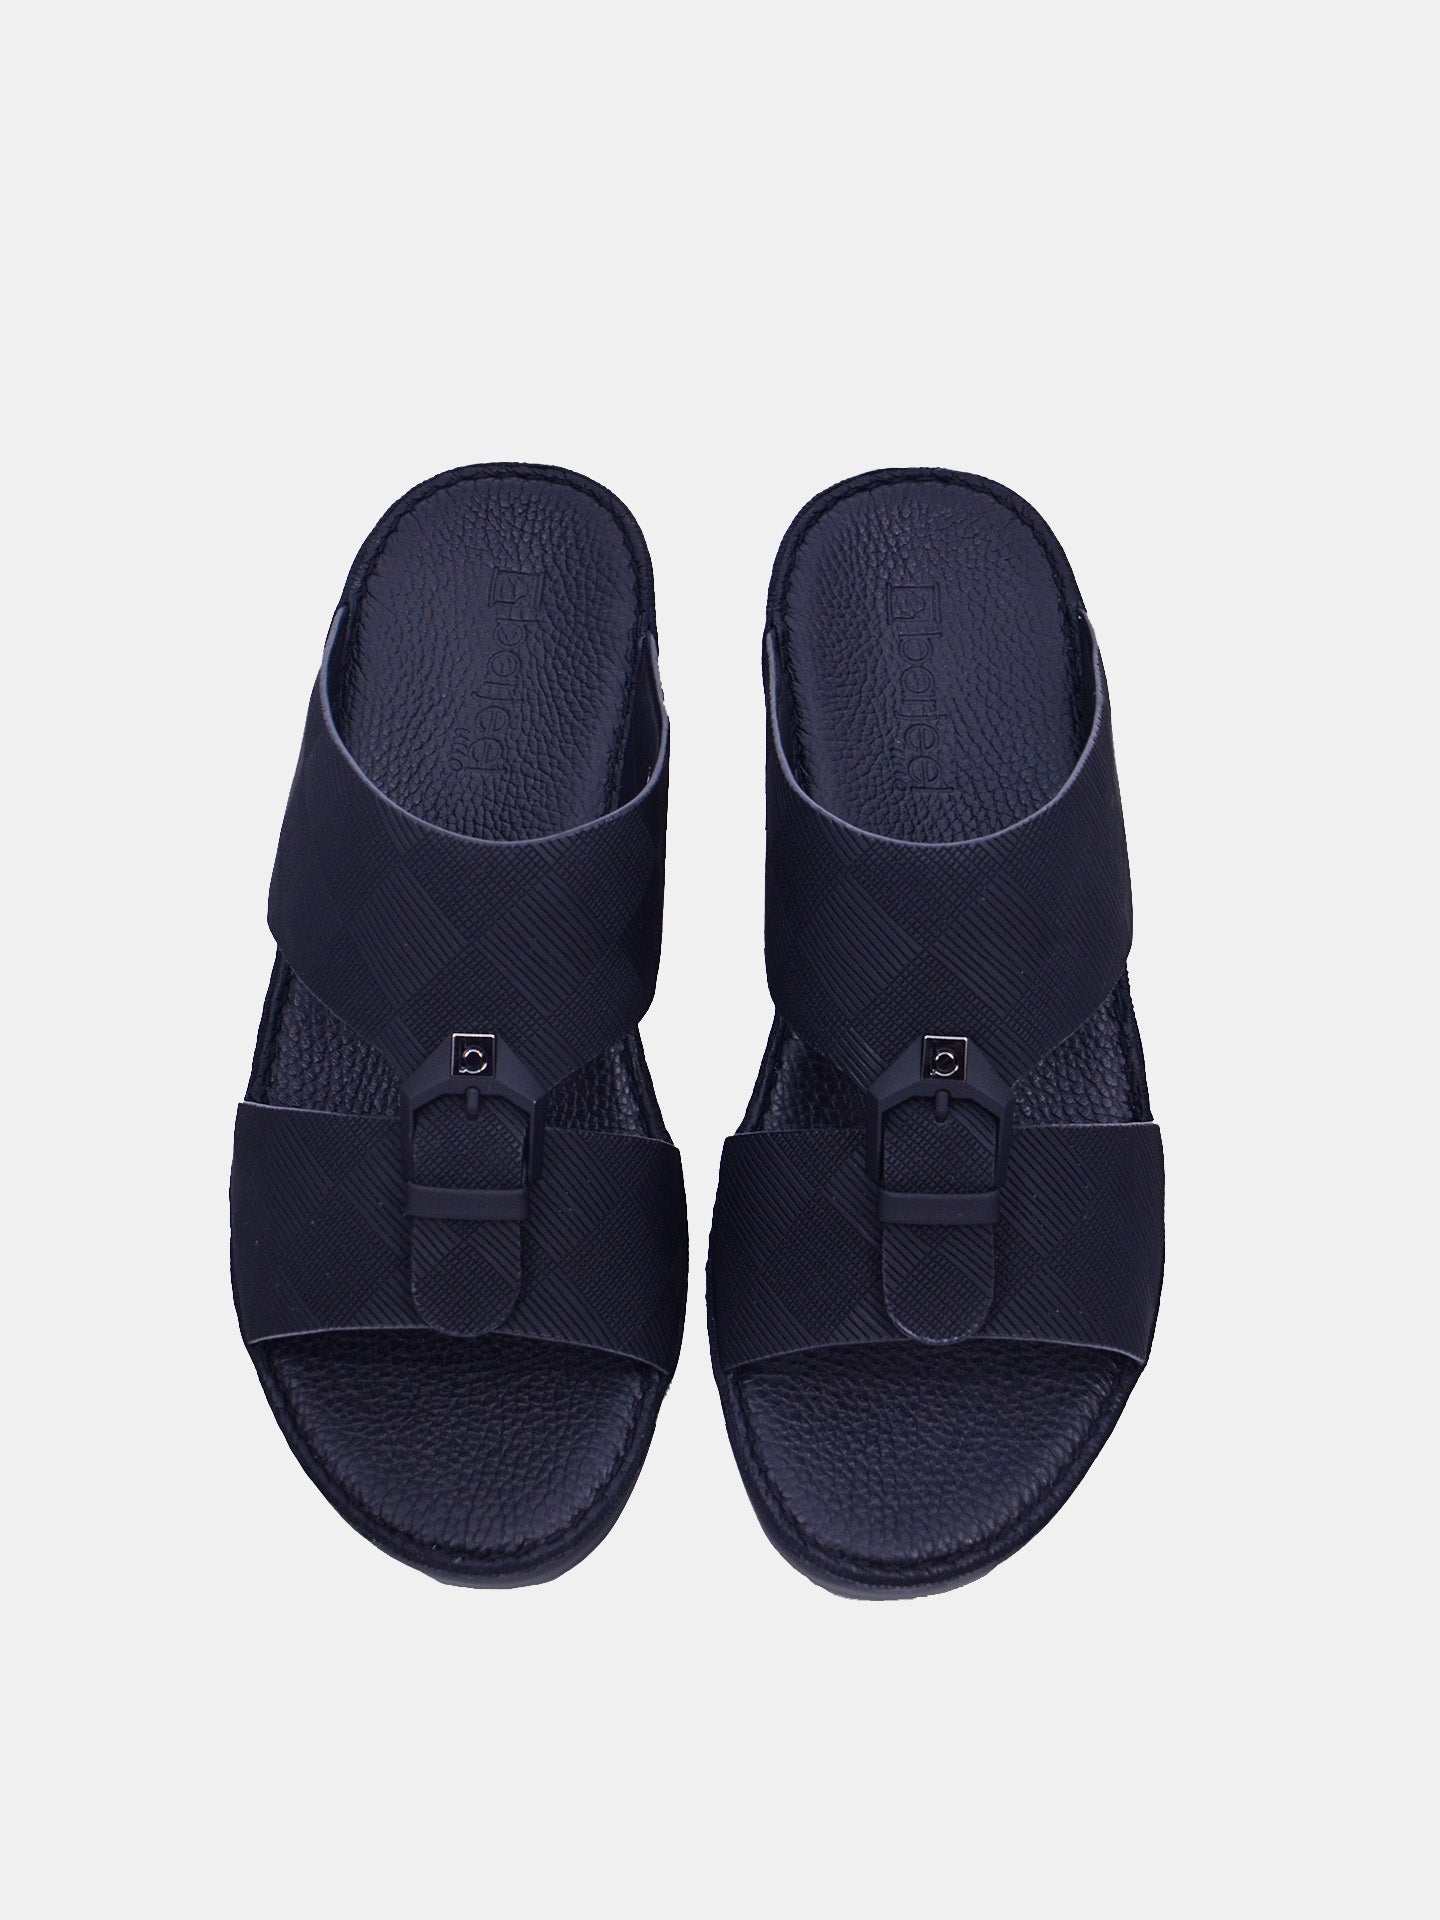 Barjeel Uno BSP1-59 Men's Arabic Sandals #color_Black